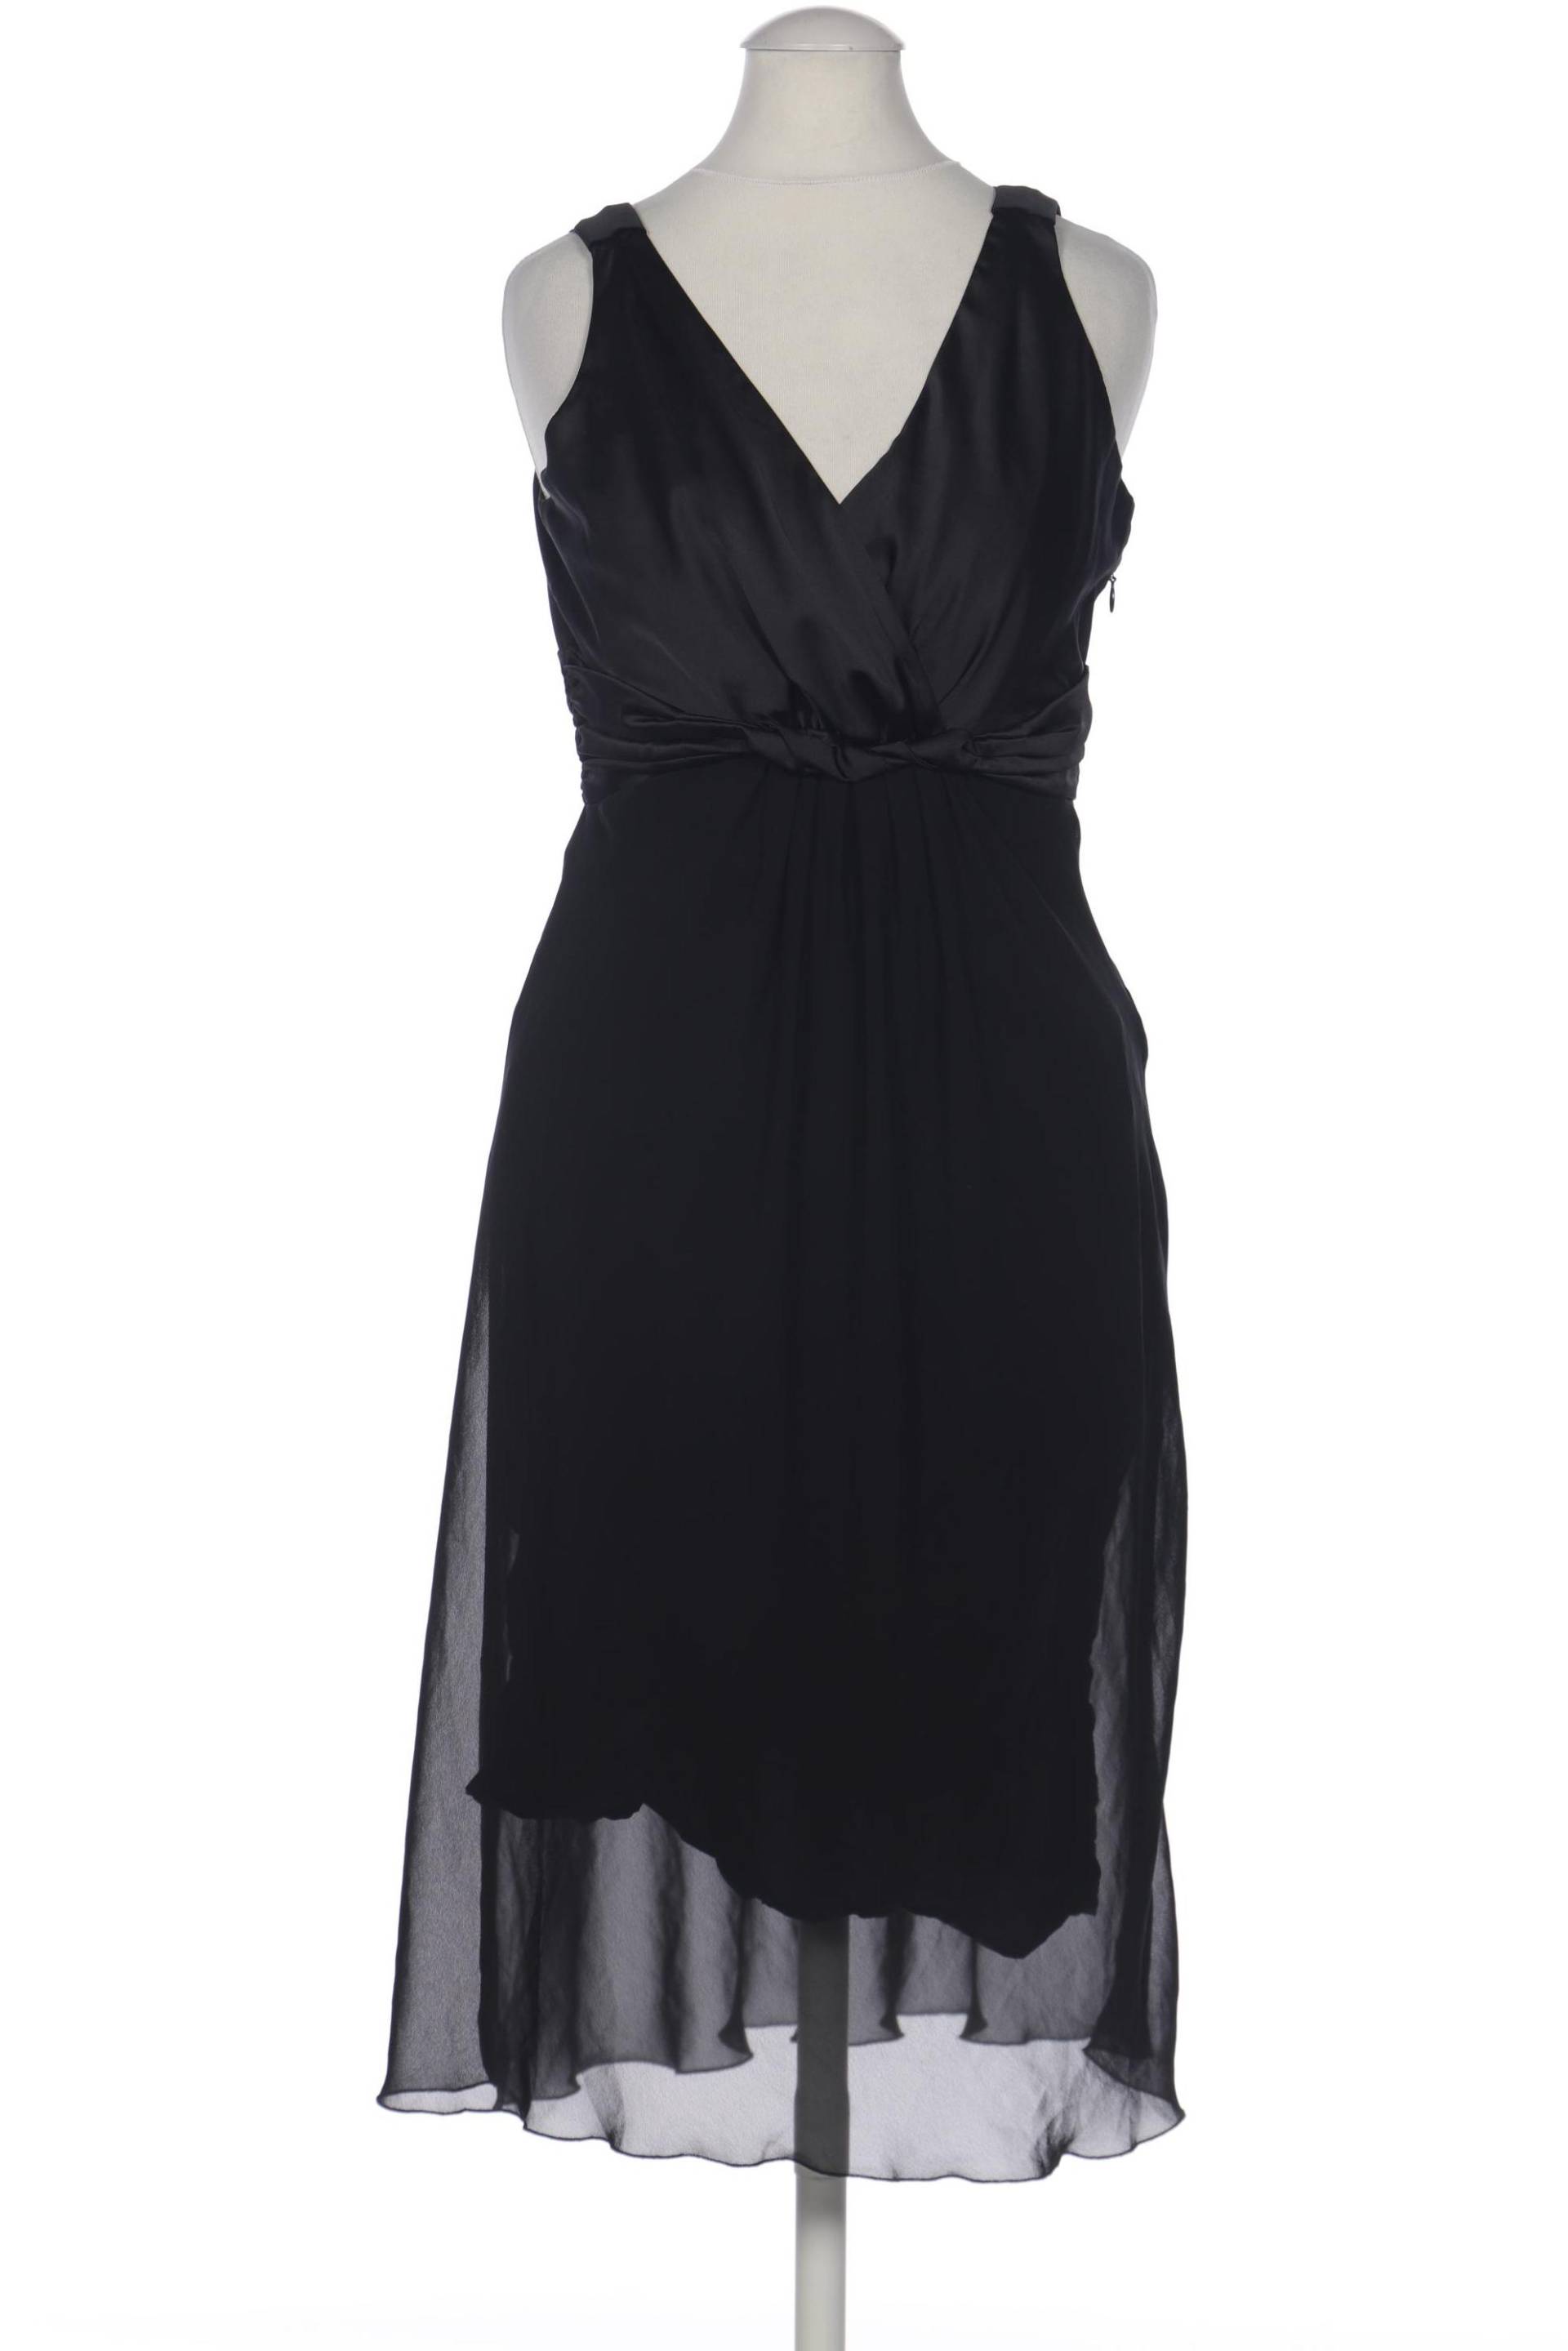 s.Oliver Selection Damen Kleid, schwarz, Gr. 34 von s.Oliver Selection